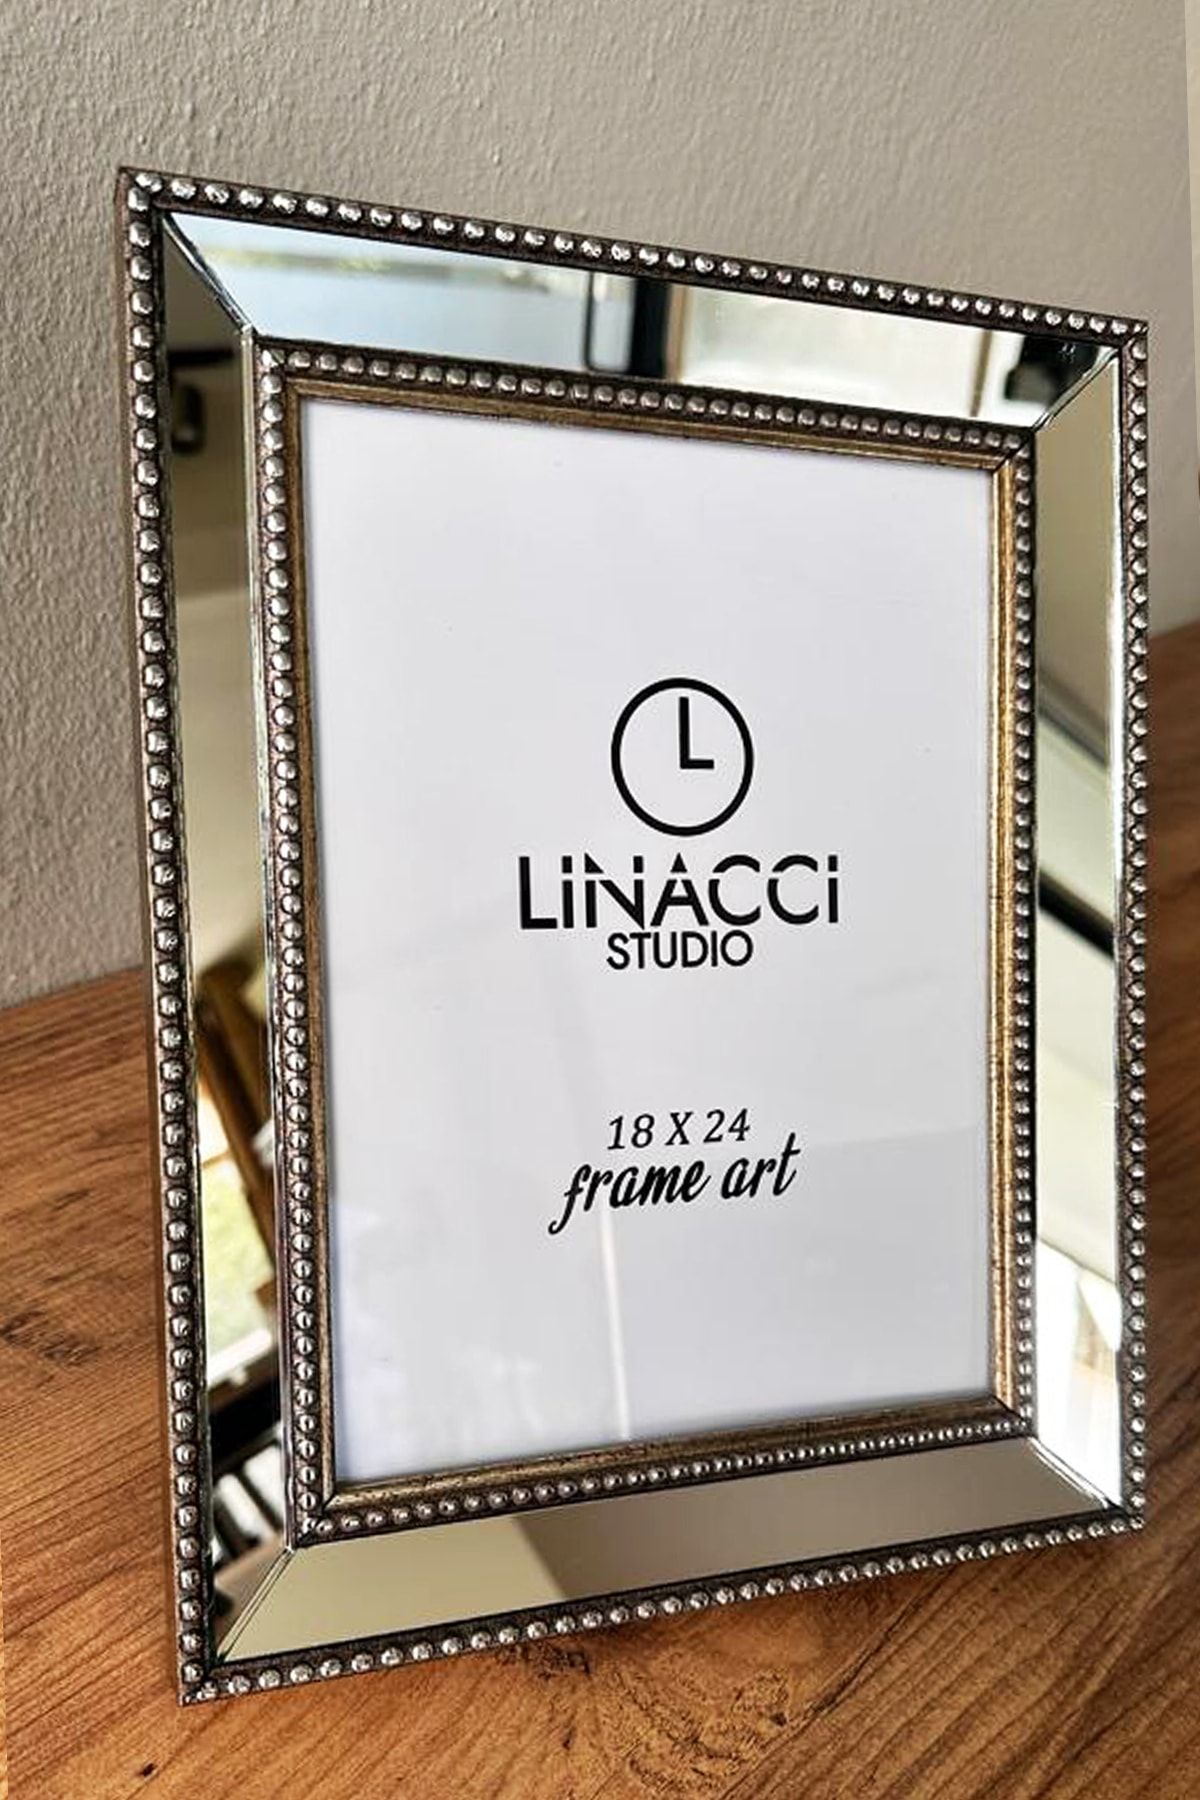 Linacci Gümüş 18x24 Ayna Çerçeveli Camlı Fotoğraf Çerçevesi